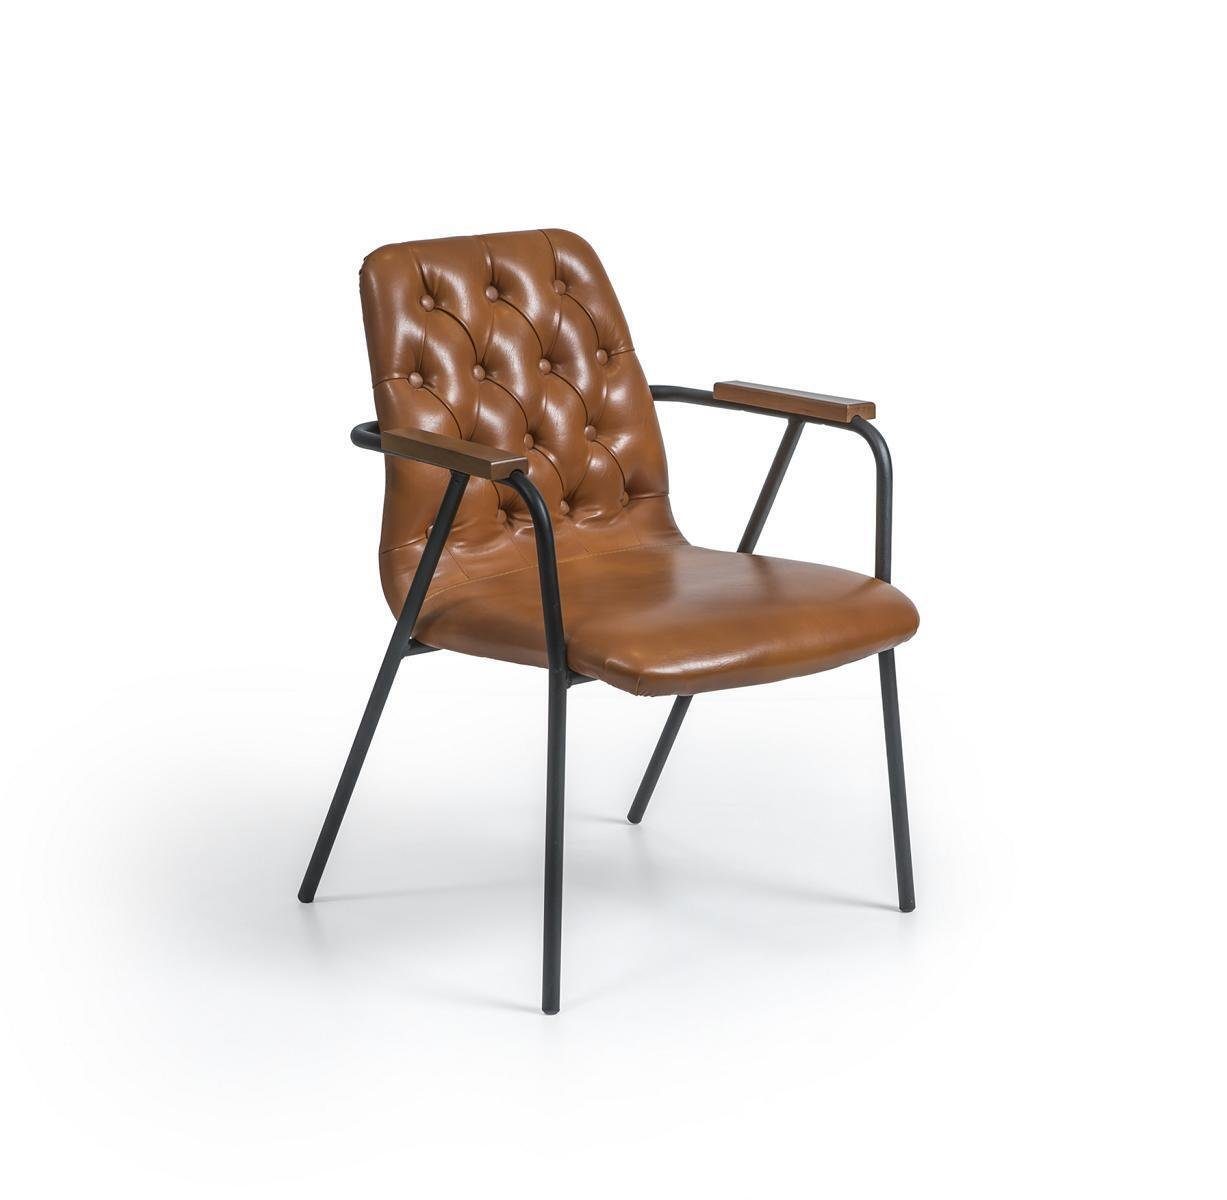 JVmoebel Armlehnstuhl Designer Stuhl mit Armlehnen Braun Esszimmerstuhl Luxus Möbel Neu, Made in Europa